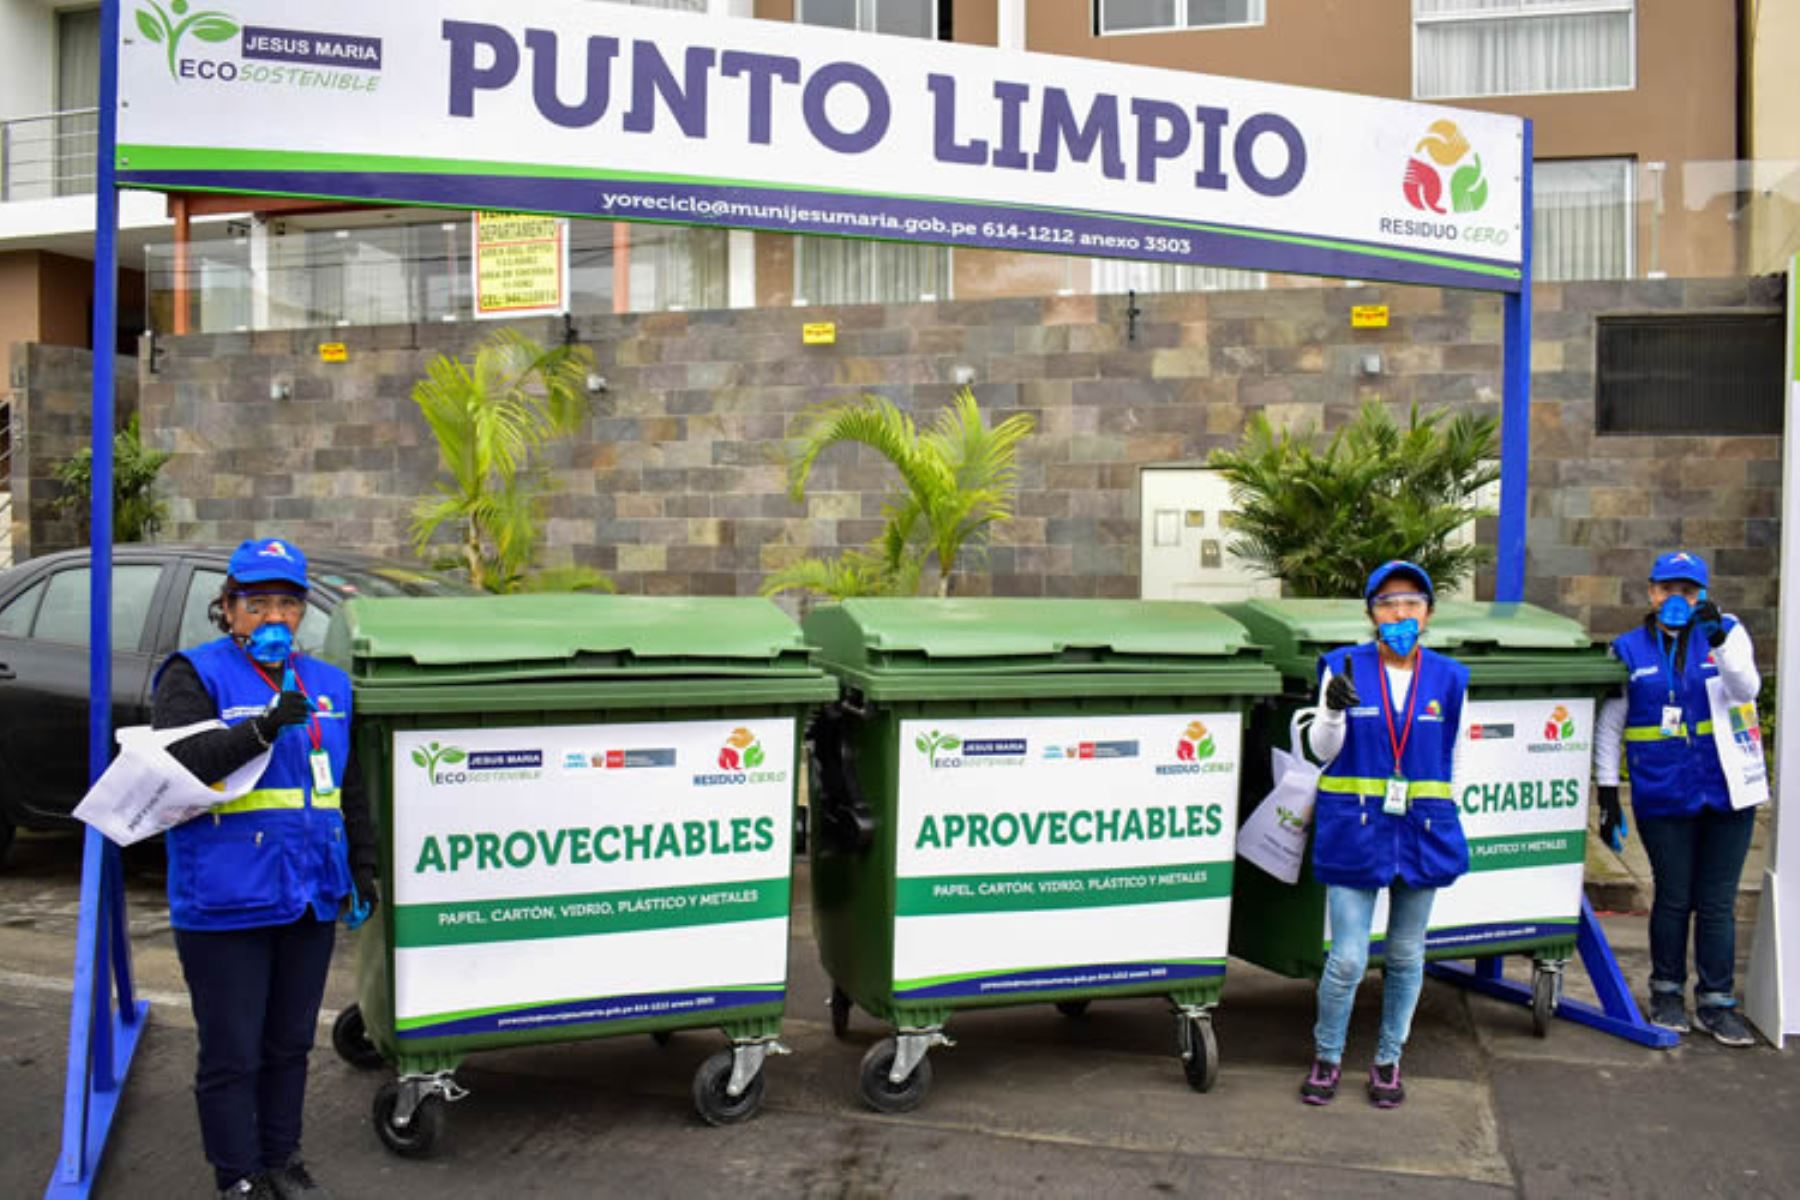 La municipalidad de Jesús María y la asociación de recicladores formales “Avancemos Juntos” reiniciaron el servicio de reciclaje. ANDINA/Minam